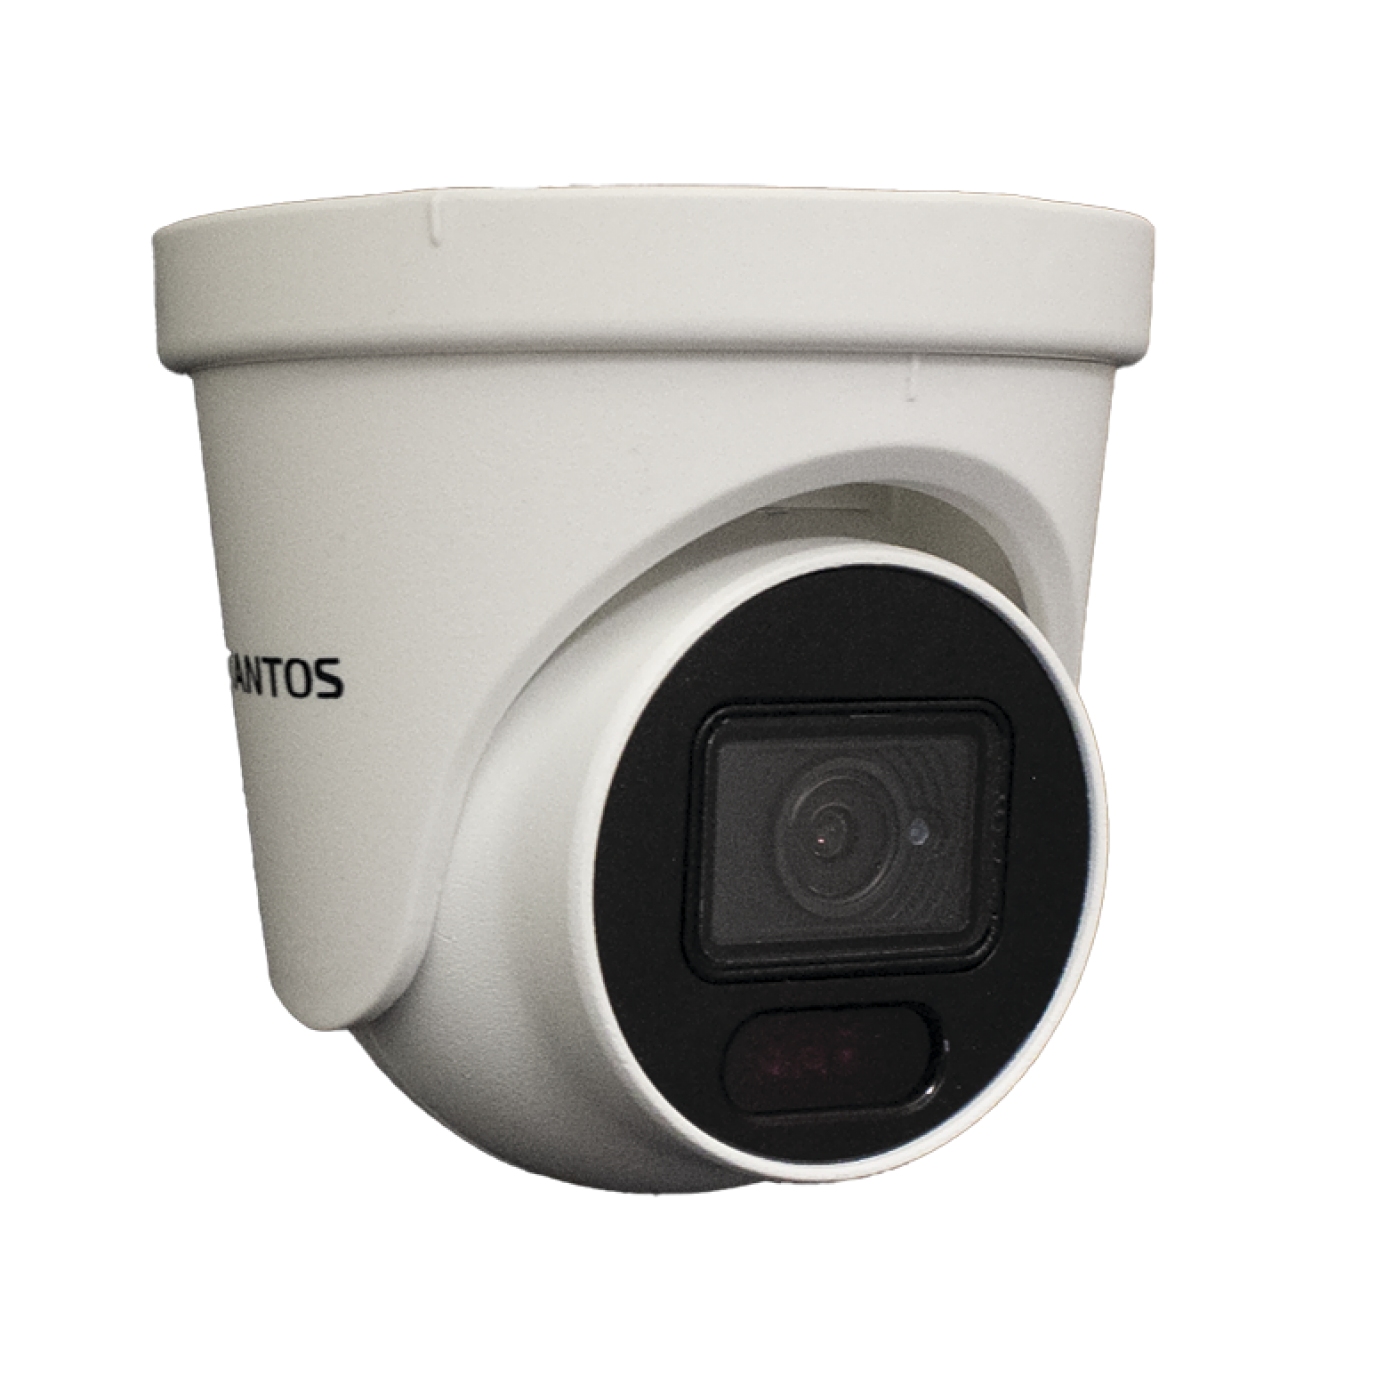 TSc-Ve2HDf - Уличная купольная видеокамера 4в1 (AHD, TVI, CVI, CVBS) 2 МП с ИК-подсветкой, корпус пластик/металл